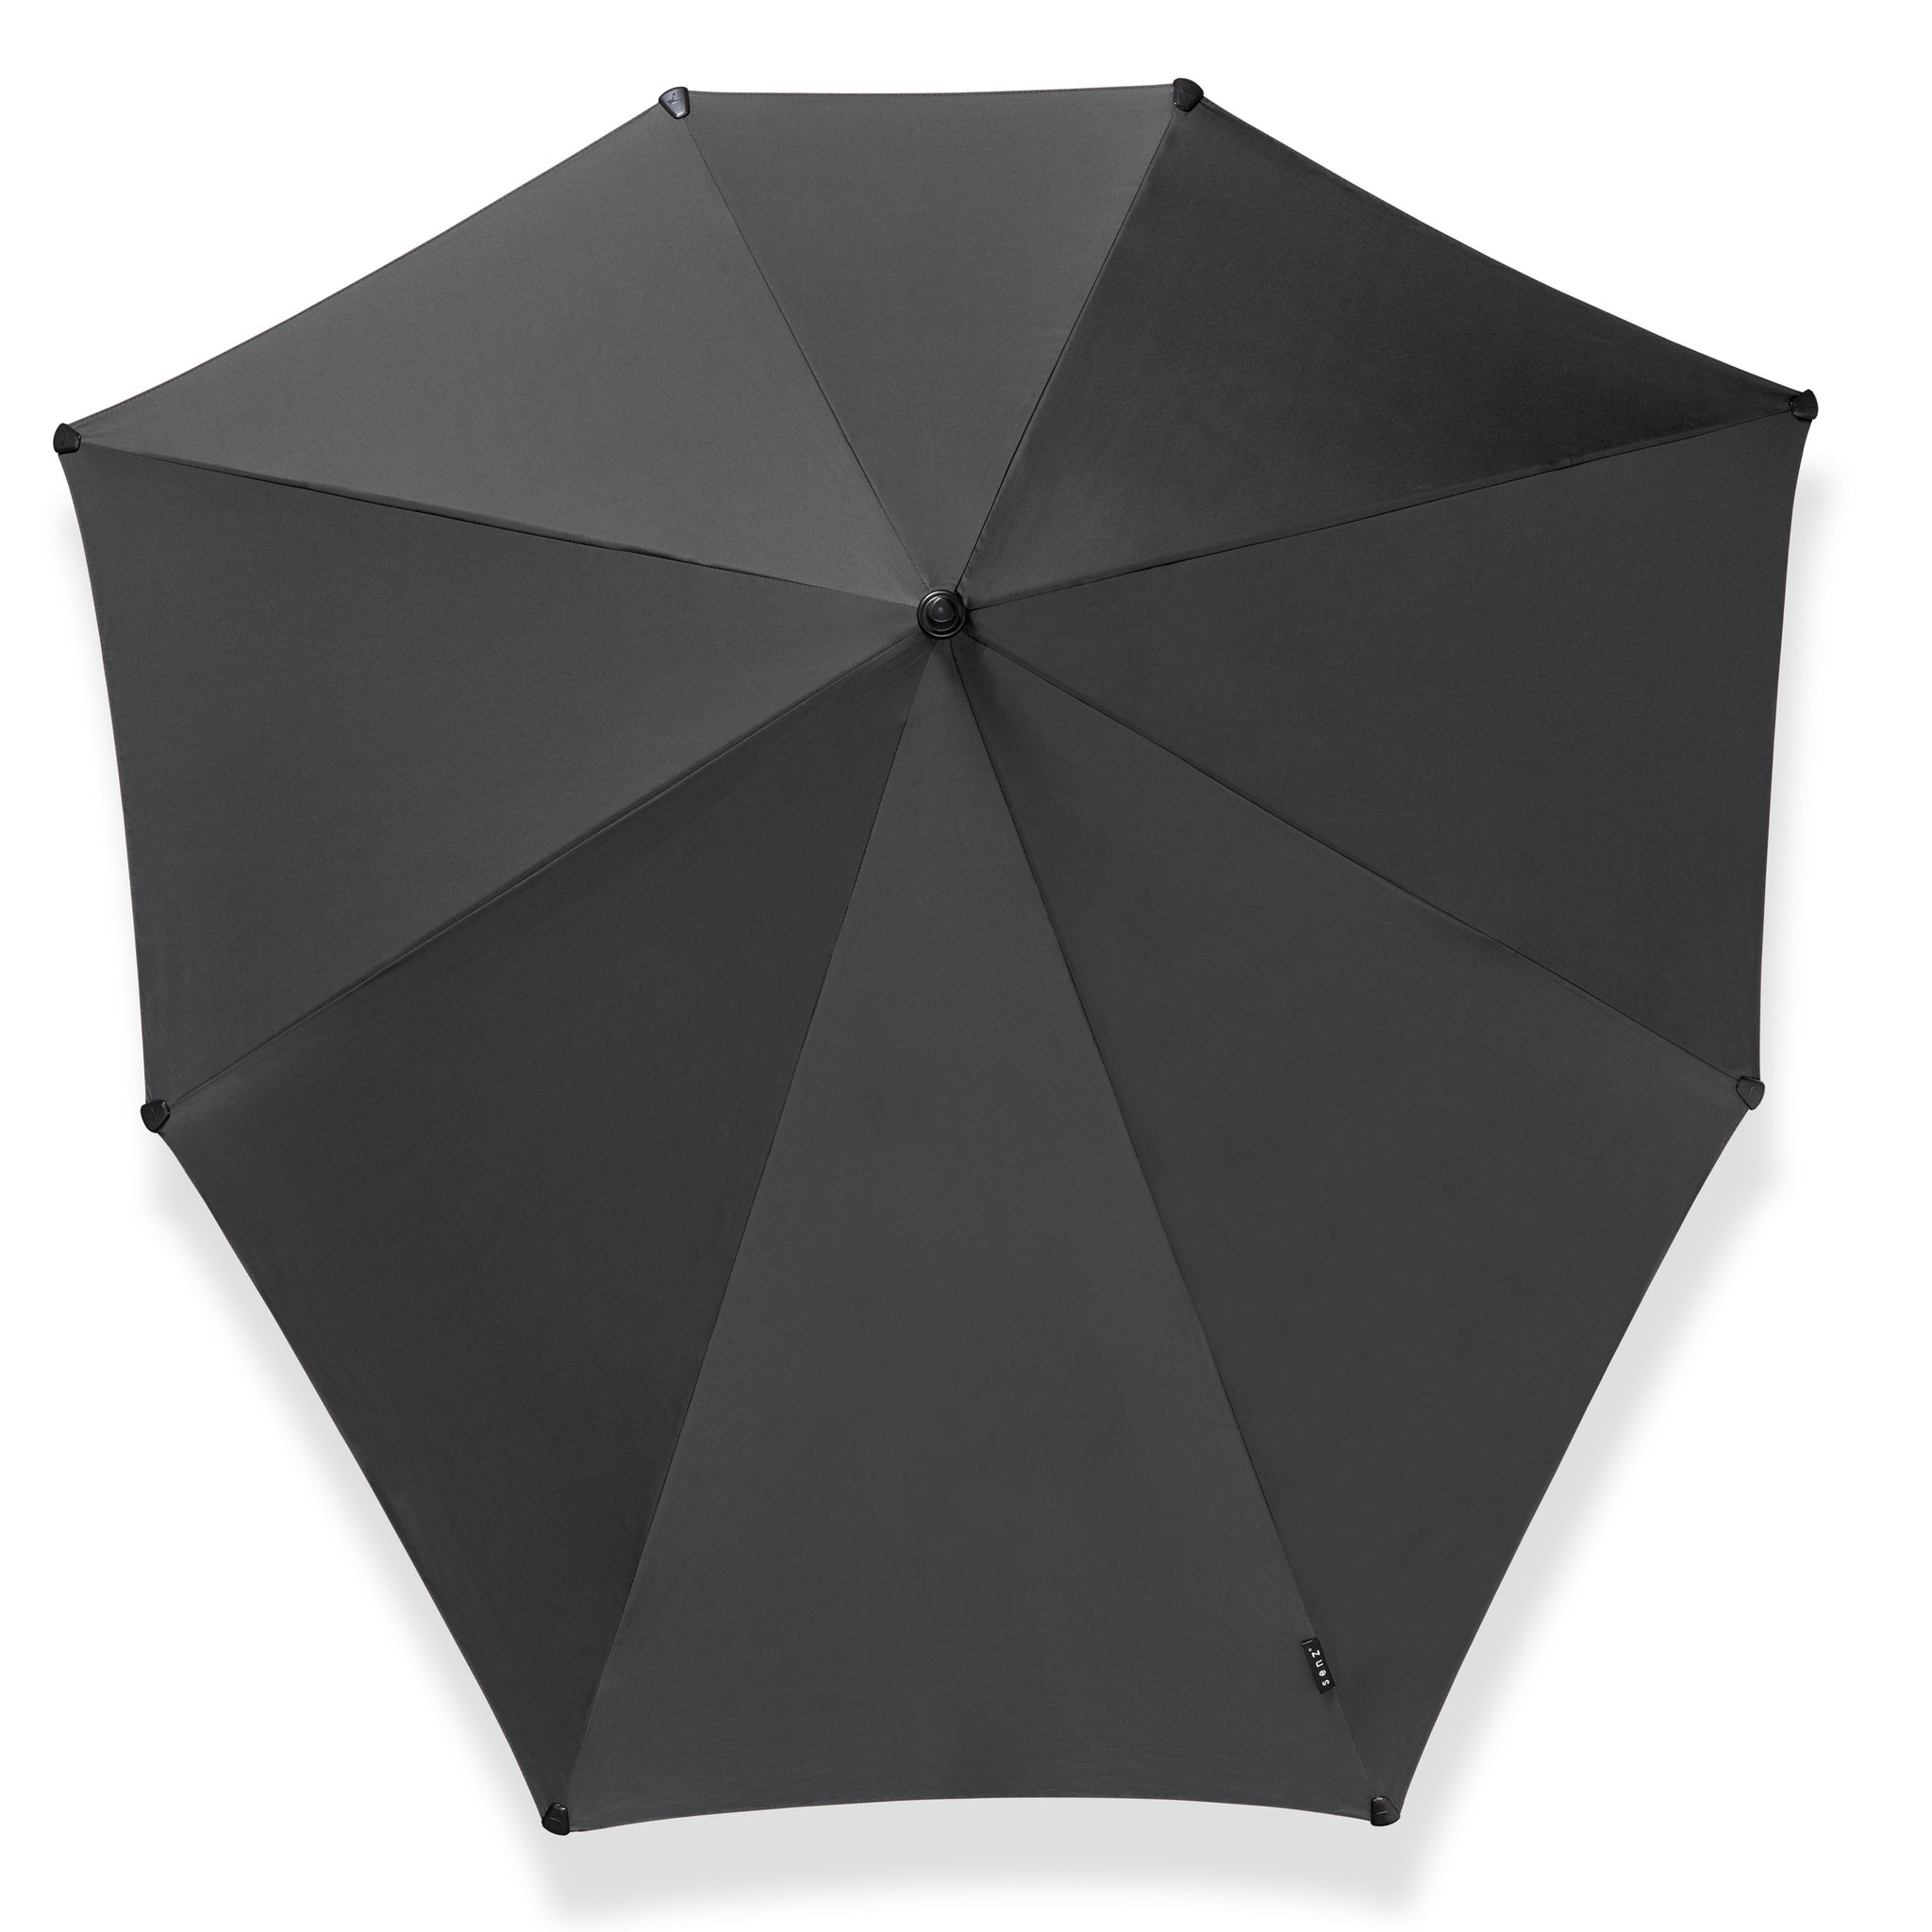 Senz Storm Paraplu XXL│Pure Black│Senz Umbrella│product foto bovenkant